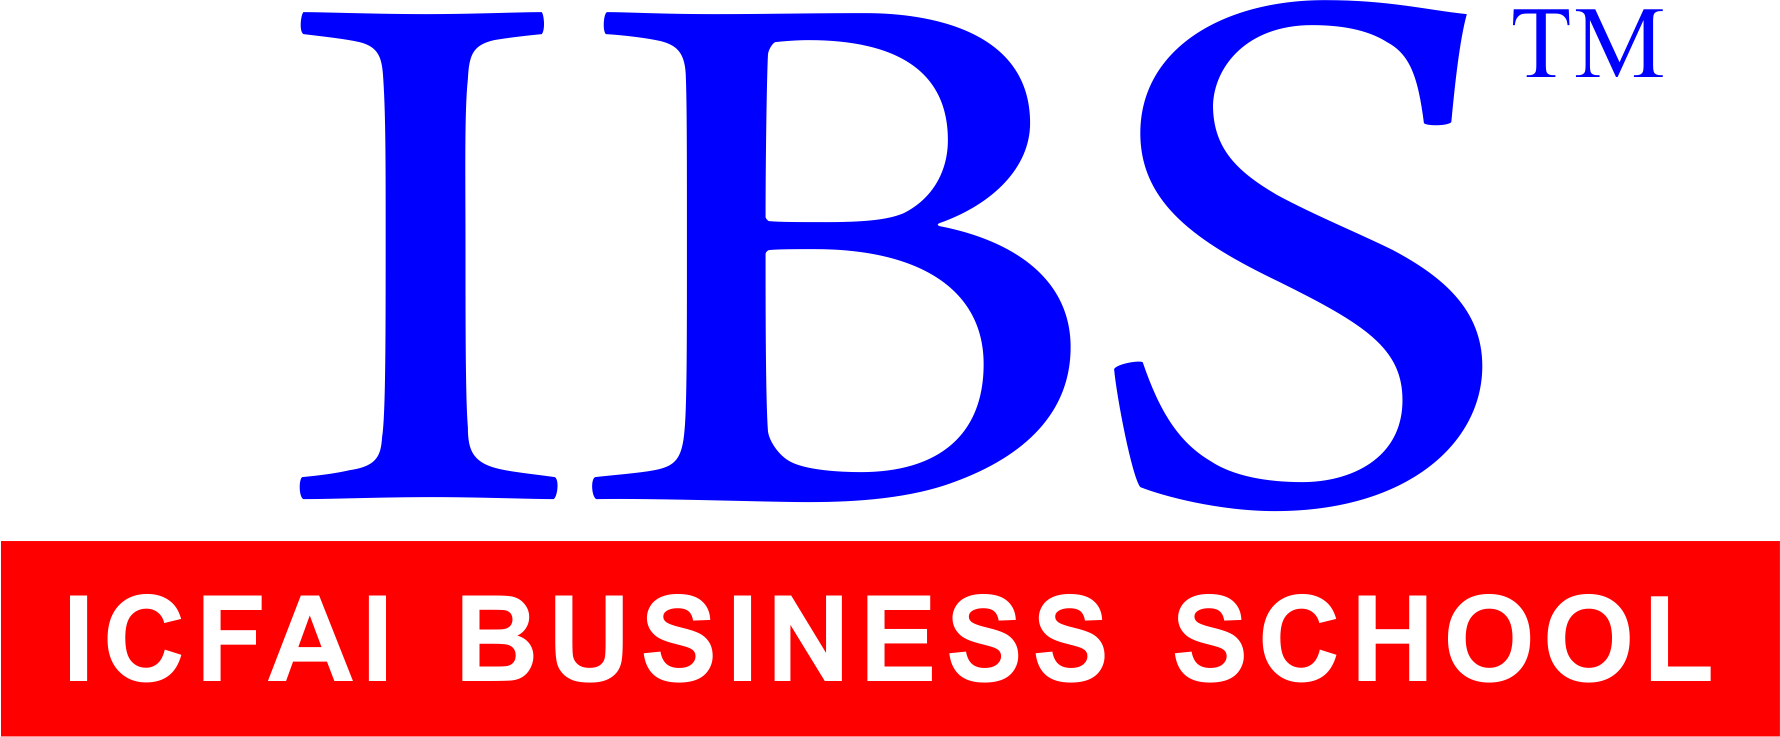 IBS_Trade_Mark_Logo_-_NEW